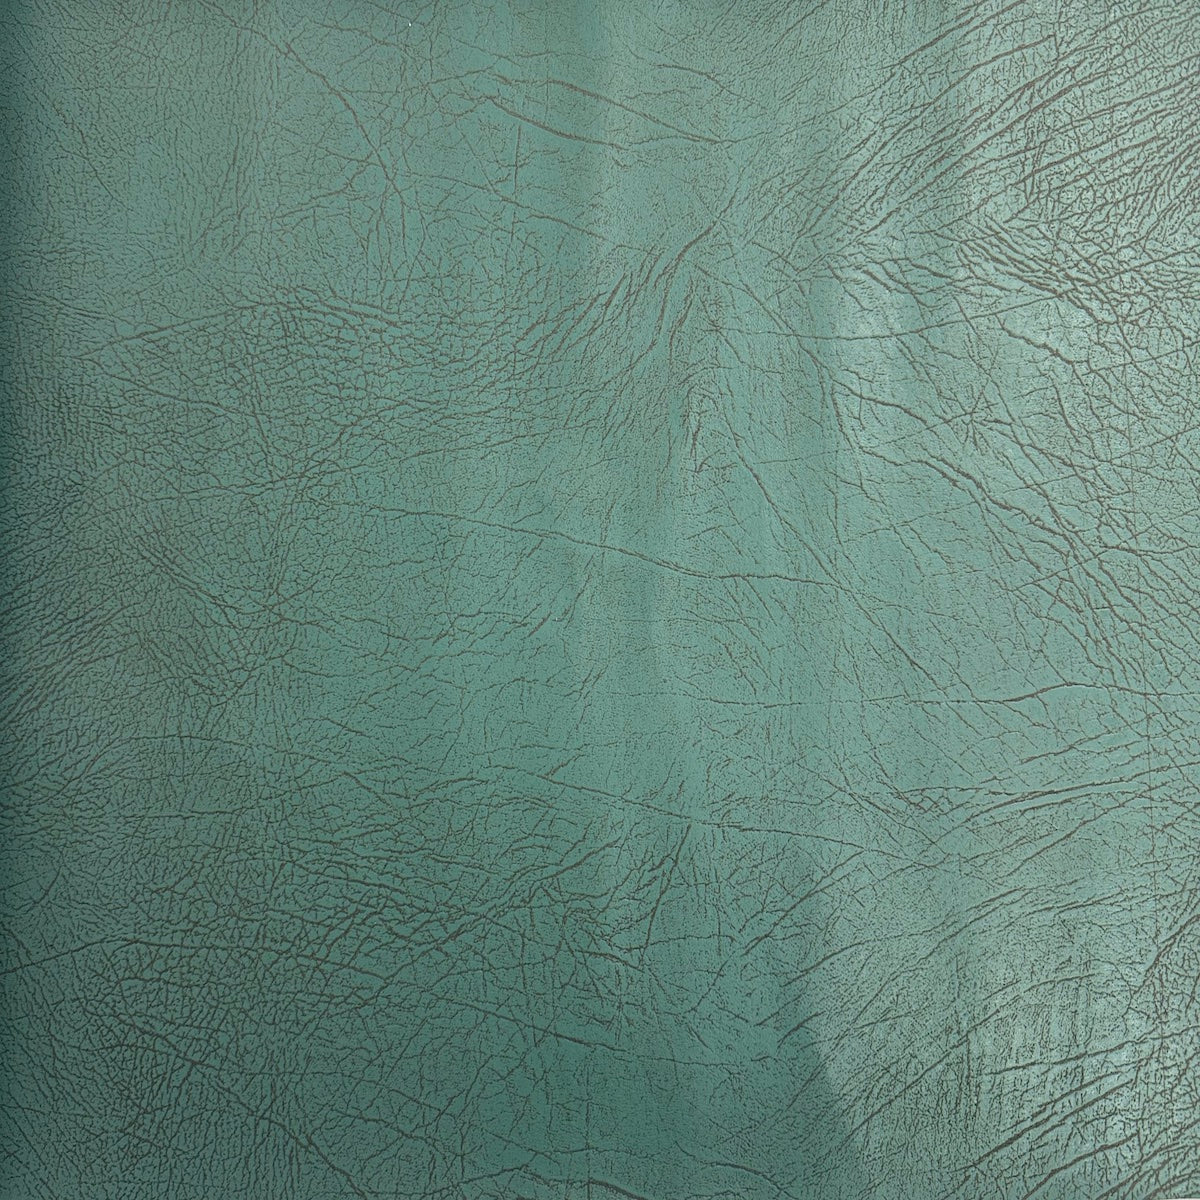 Tela de vinilo de ante de imitación de cuero desgastada vintage azul turquesa